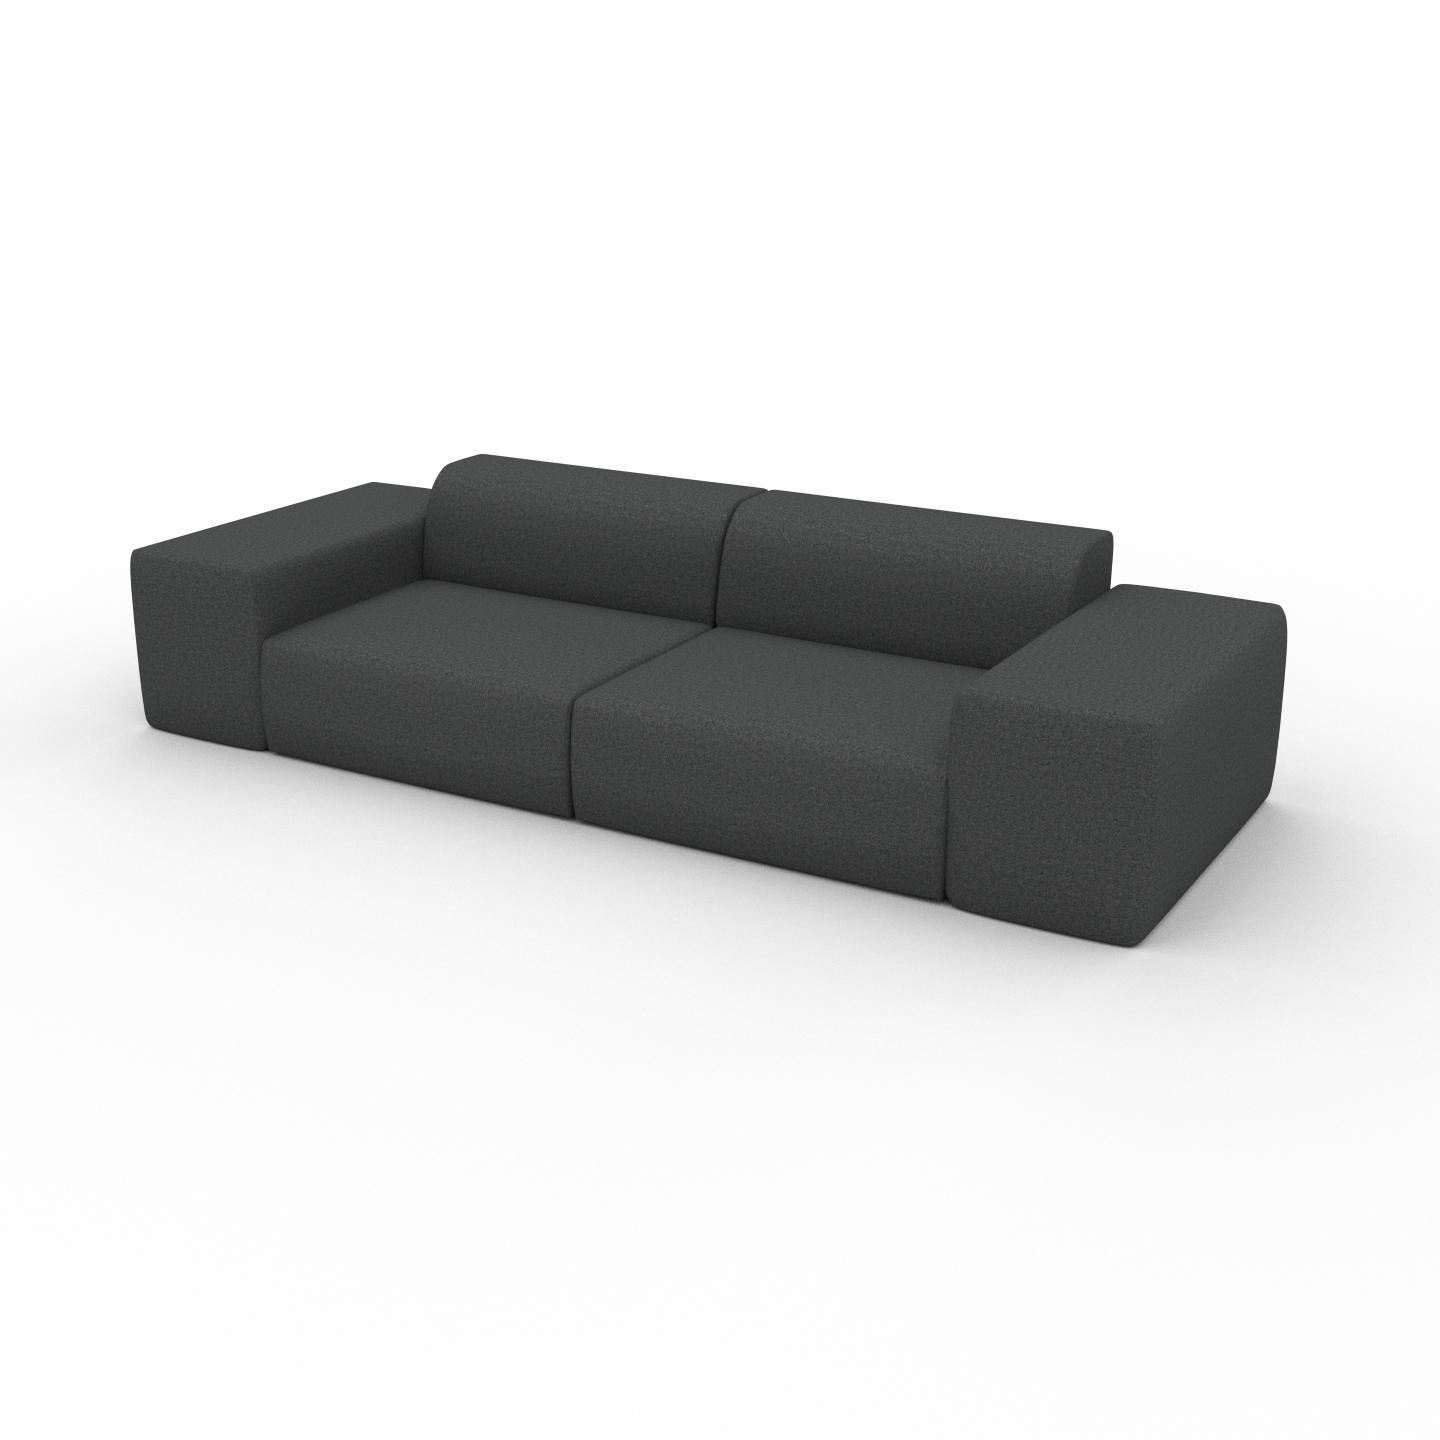 MYCS Sofa 3-Sitzer Steingrau Wolle - Elegantes, gemütliches 3-Sitzer Sofa: Hochwertige Qualität, einzigartiges Design - 294 x 72 x 107 cm, konfigurierbar